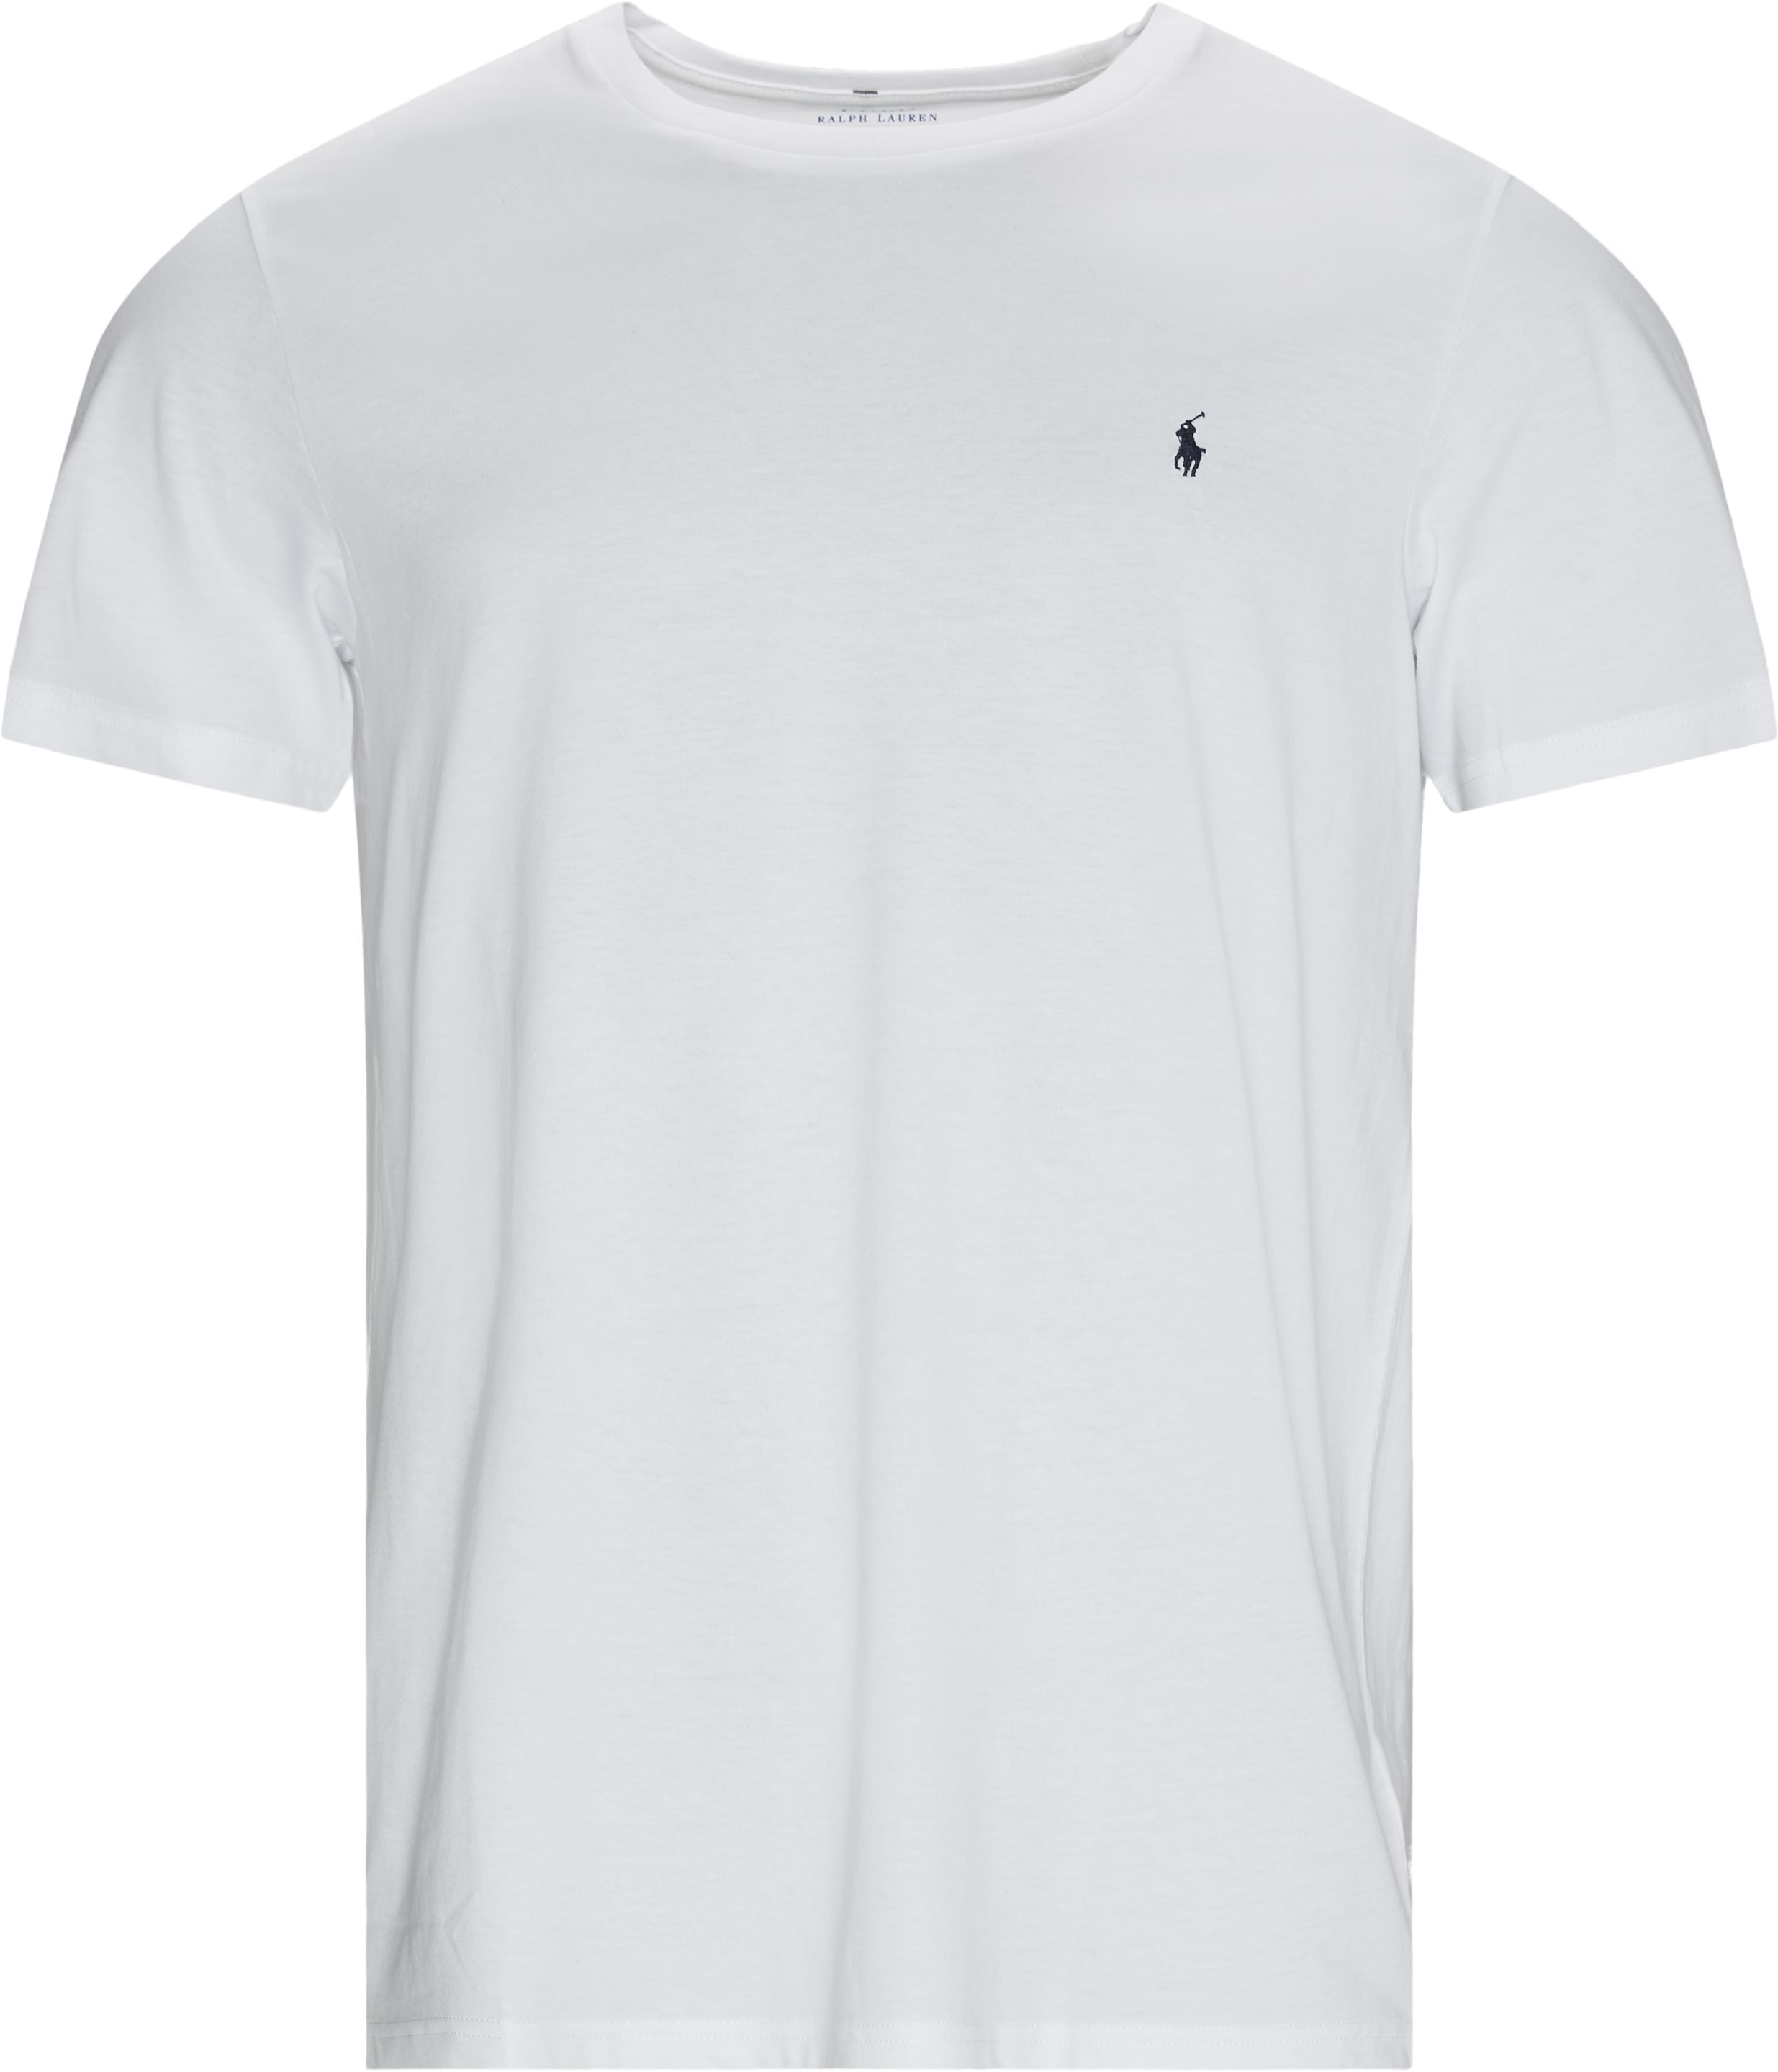 Cotton Logo Tee - T-shirts - Regular fit - White